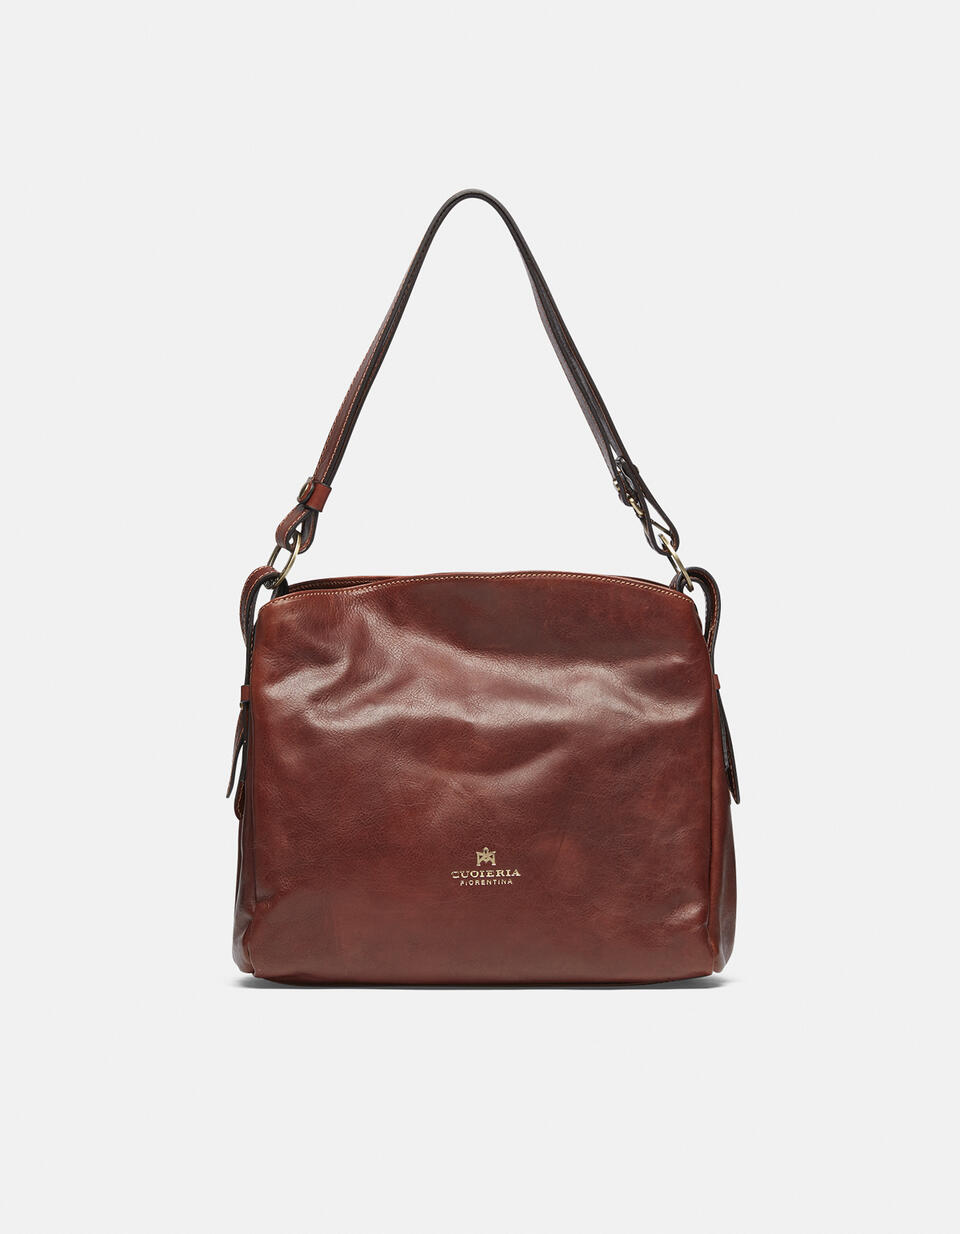 Large leather shoulder bag - Shoulder Bags - WOMEN'S BAGS | bags MARRONE - Shoulder Bags - WOMEN'S BAGS | bagsCuoieria Fiorentina